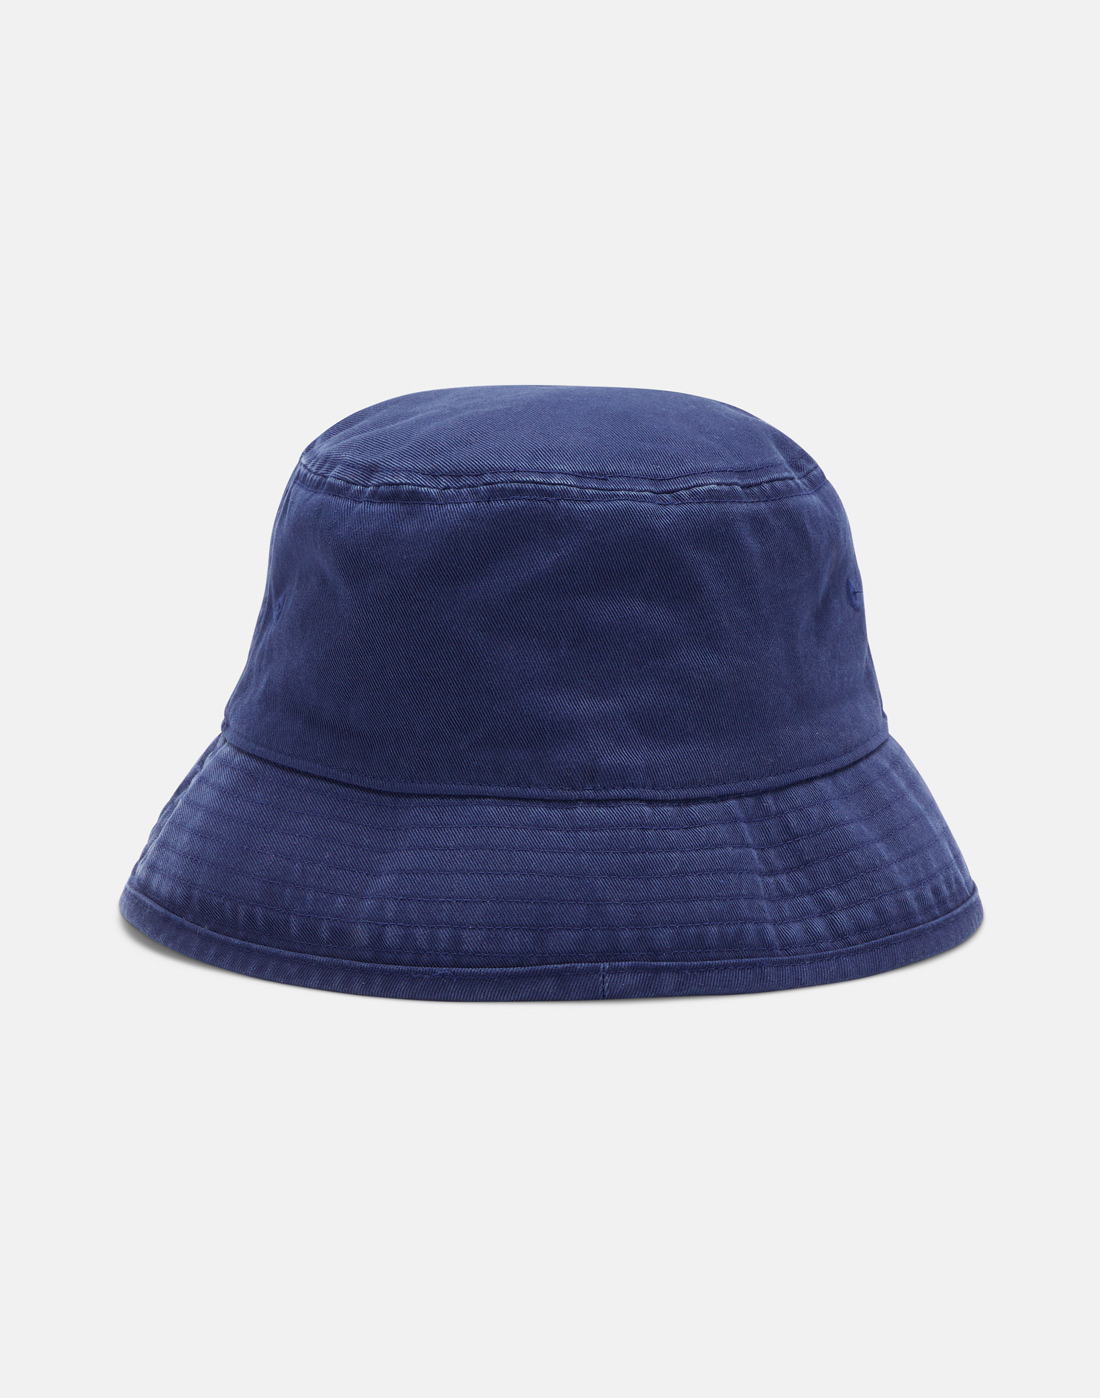 adidas Originals Logo Bucket Hat - Blue | Life Style Sports UK